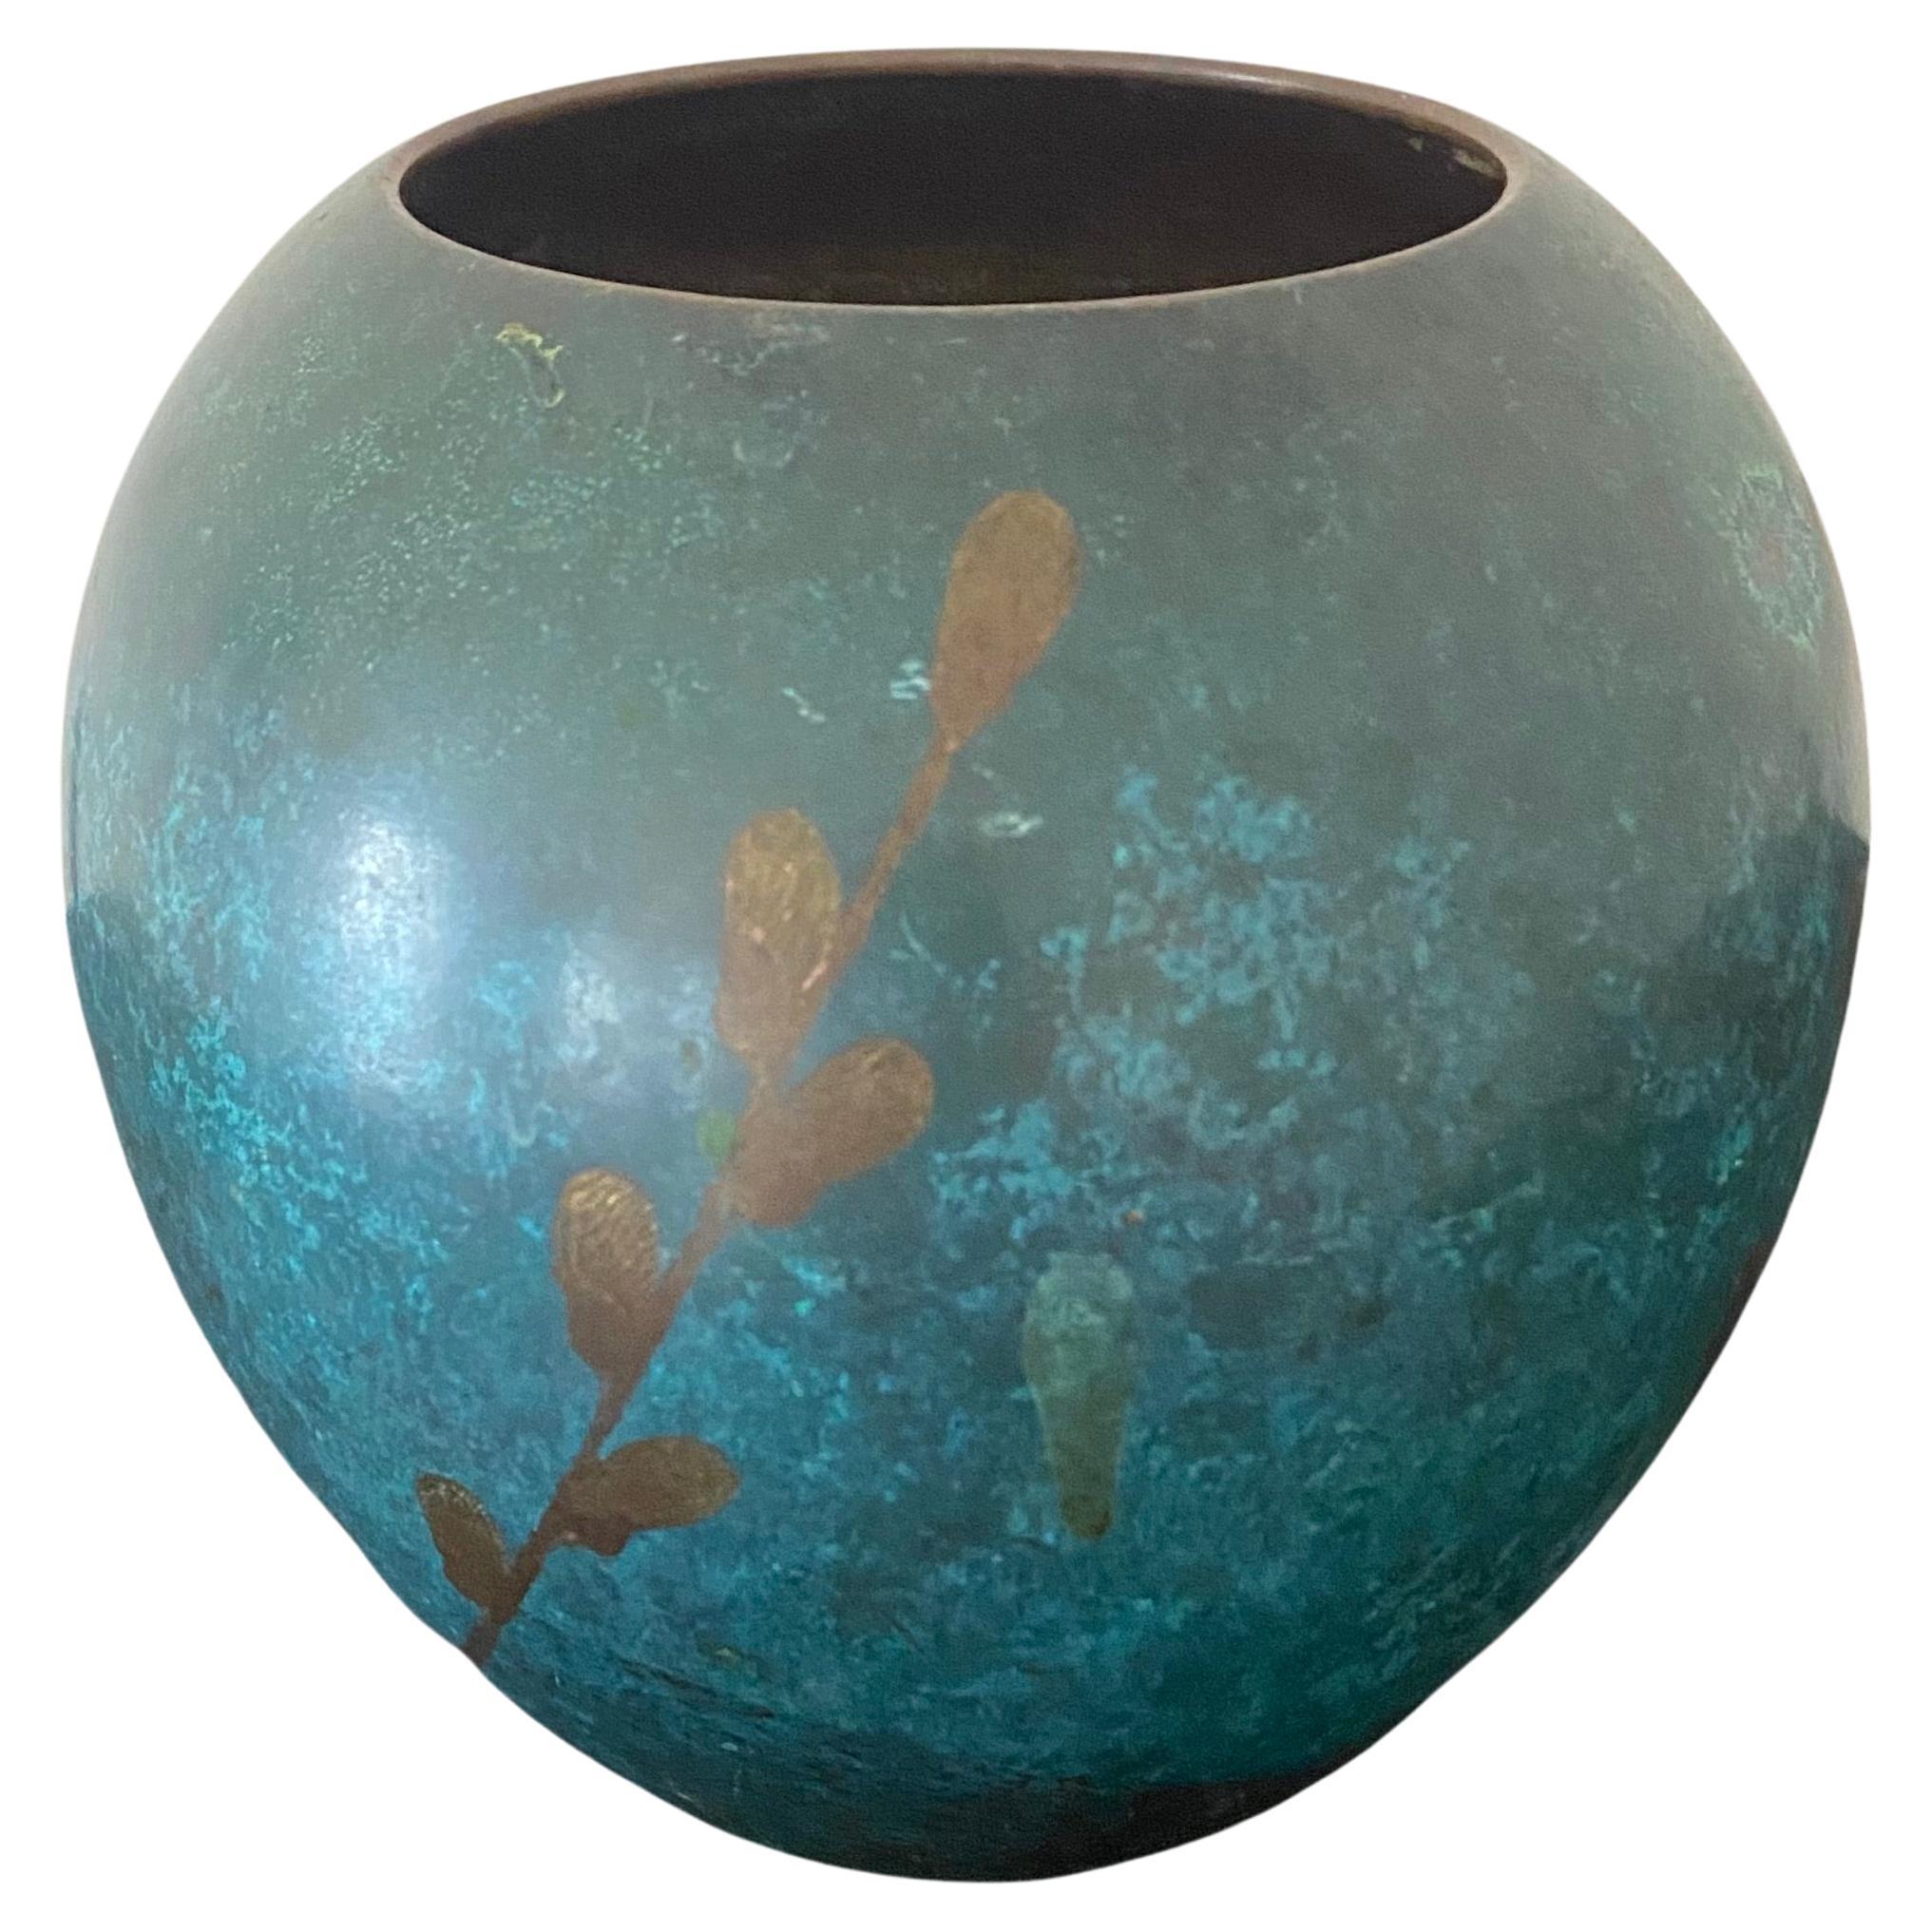 Sehen Sie sich diese exquisite WMF (Württembergische Metallwarenfabrik) Ikora Vase an, die aus patinierter Bronze gefertigt ist und ein stilisiertes Weidenzweig-Design von Paul Haustein (1880-1944) aus den 1920er Jahren aufweist. Die runde, bauchige